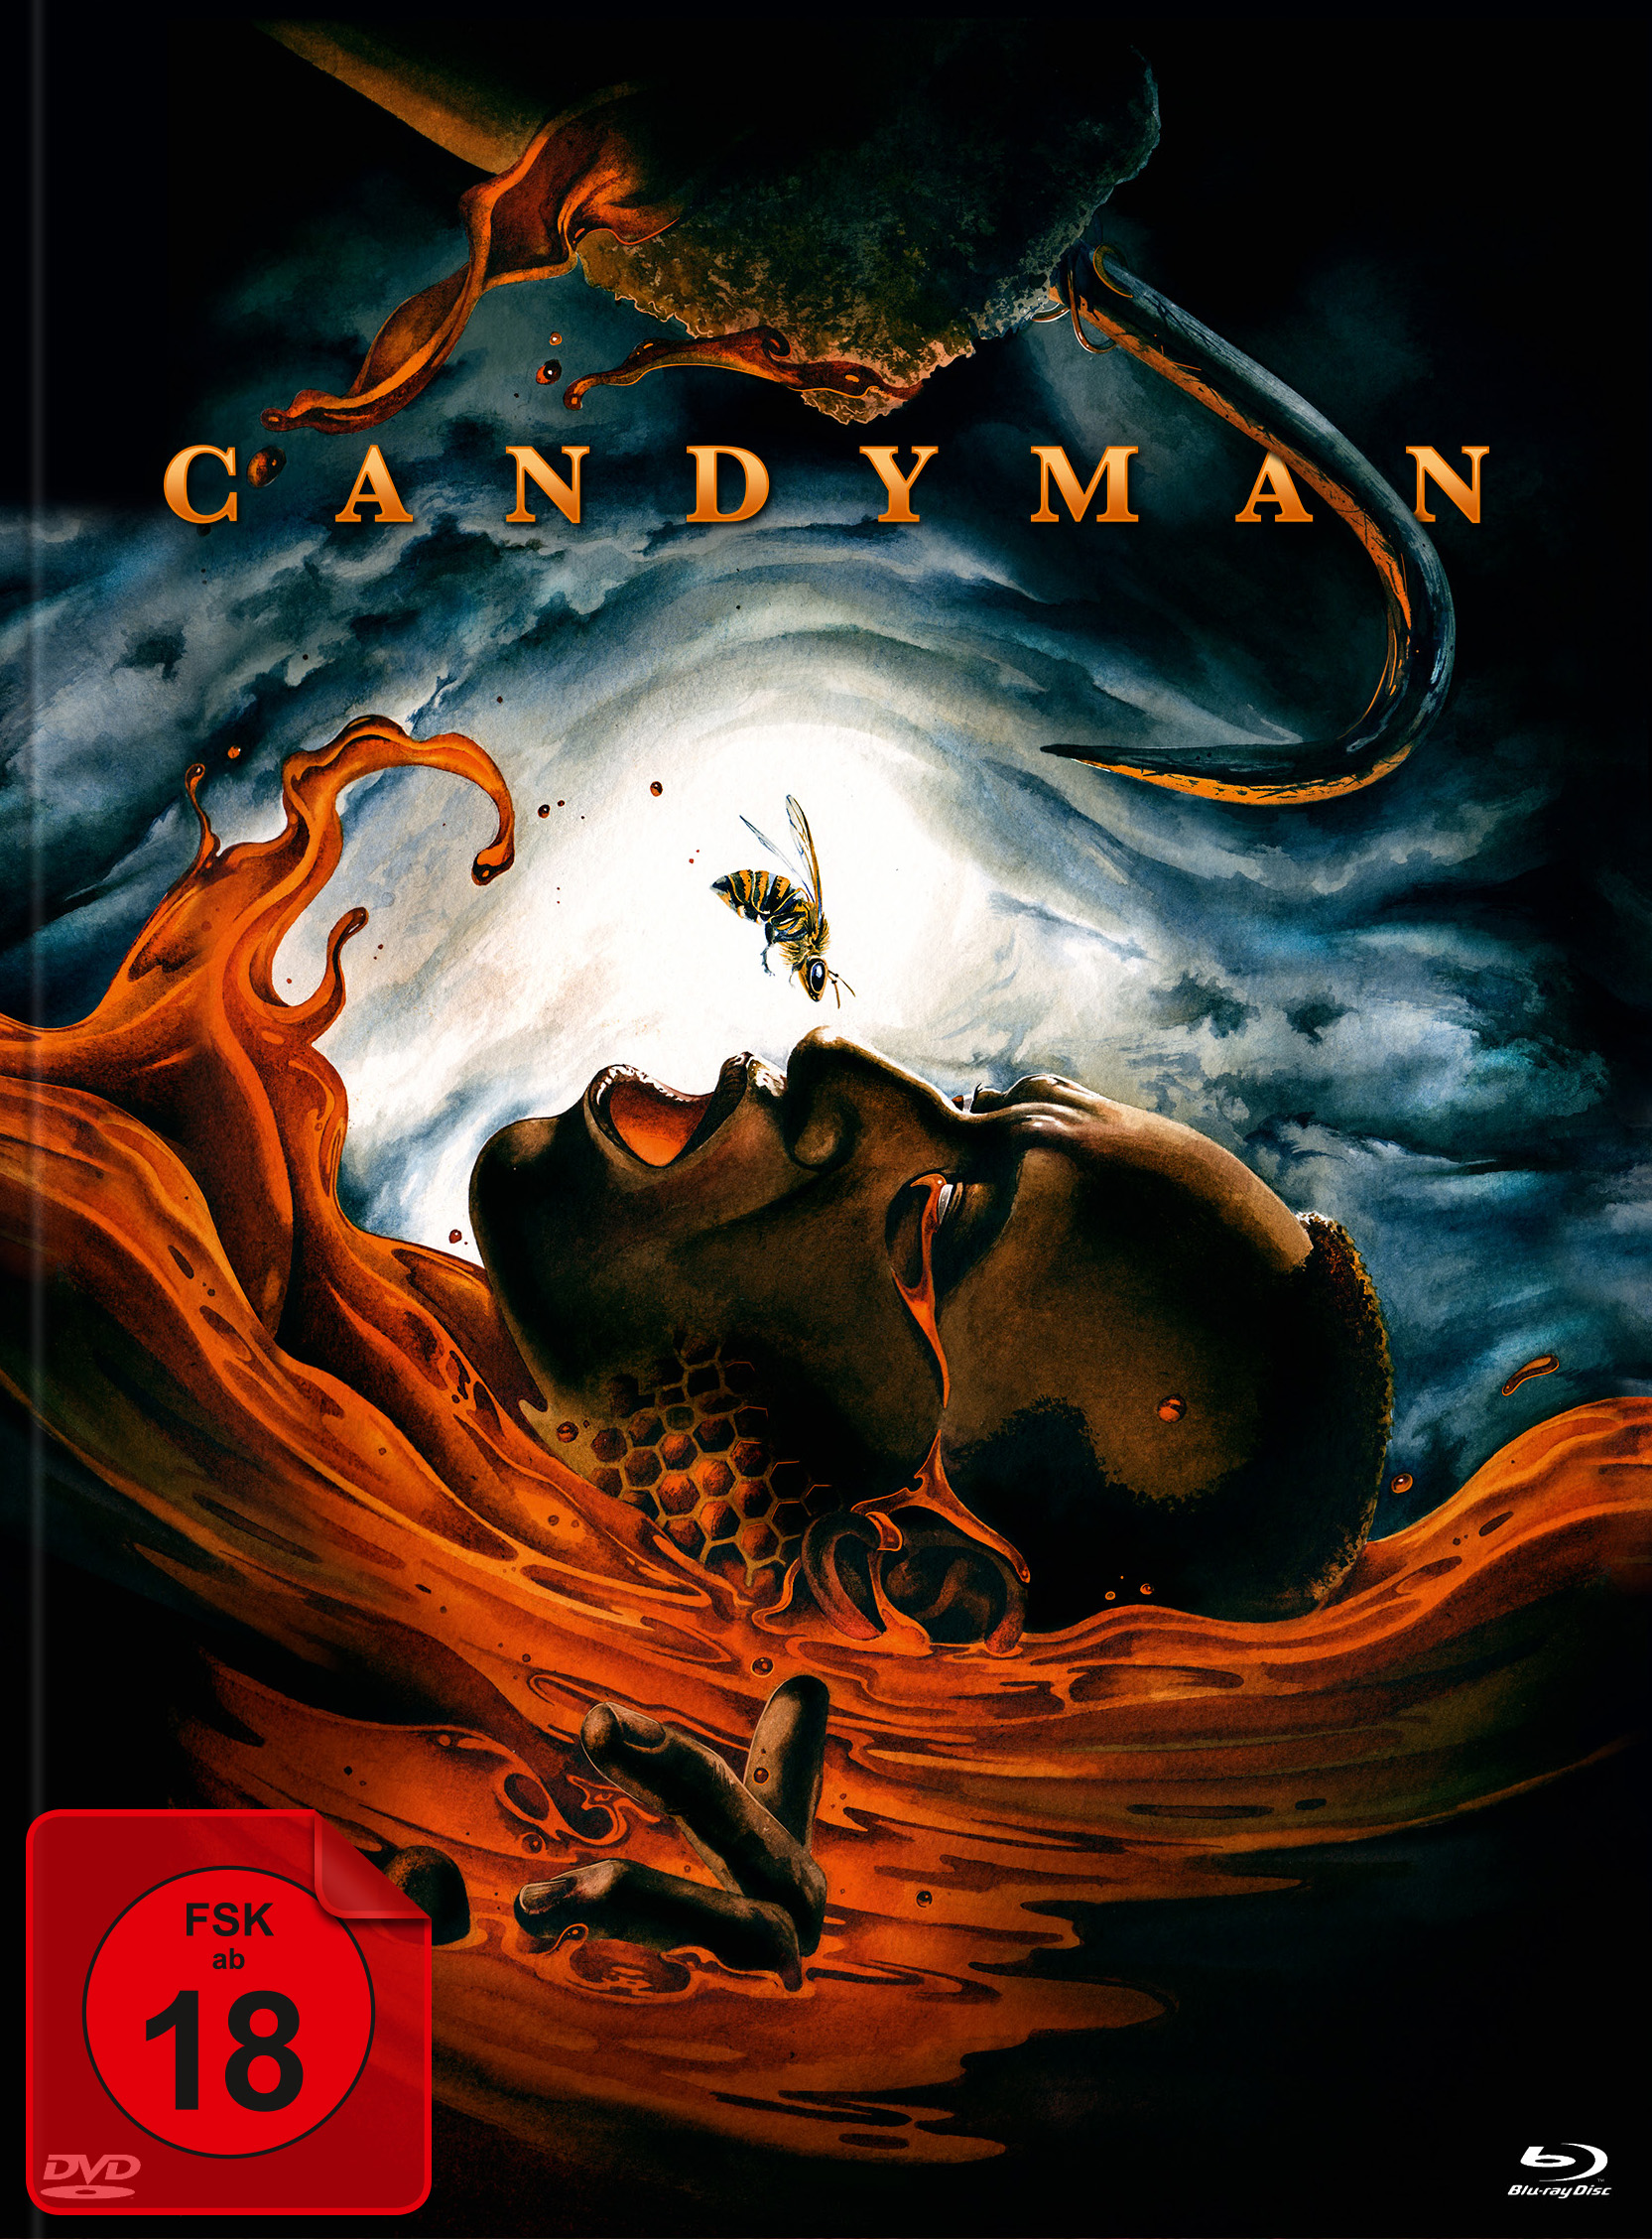 Candyman (Blu-ray + DVD im Mediabook) - Cover A